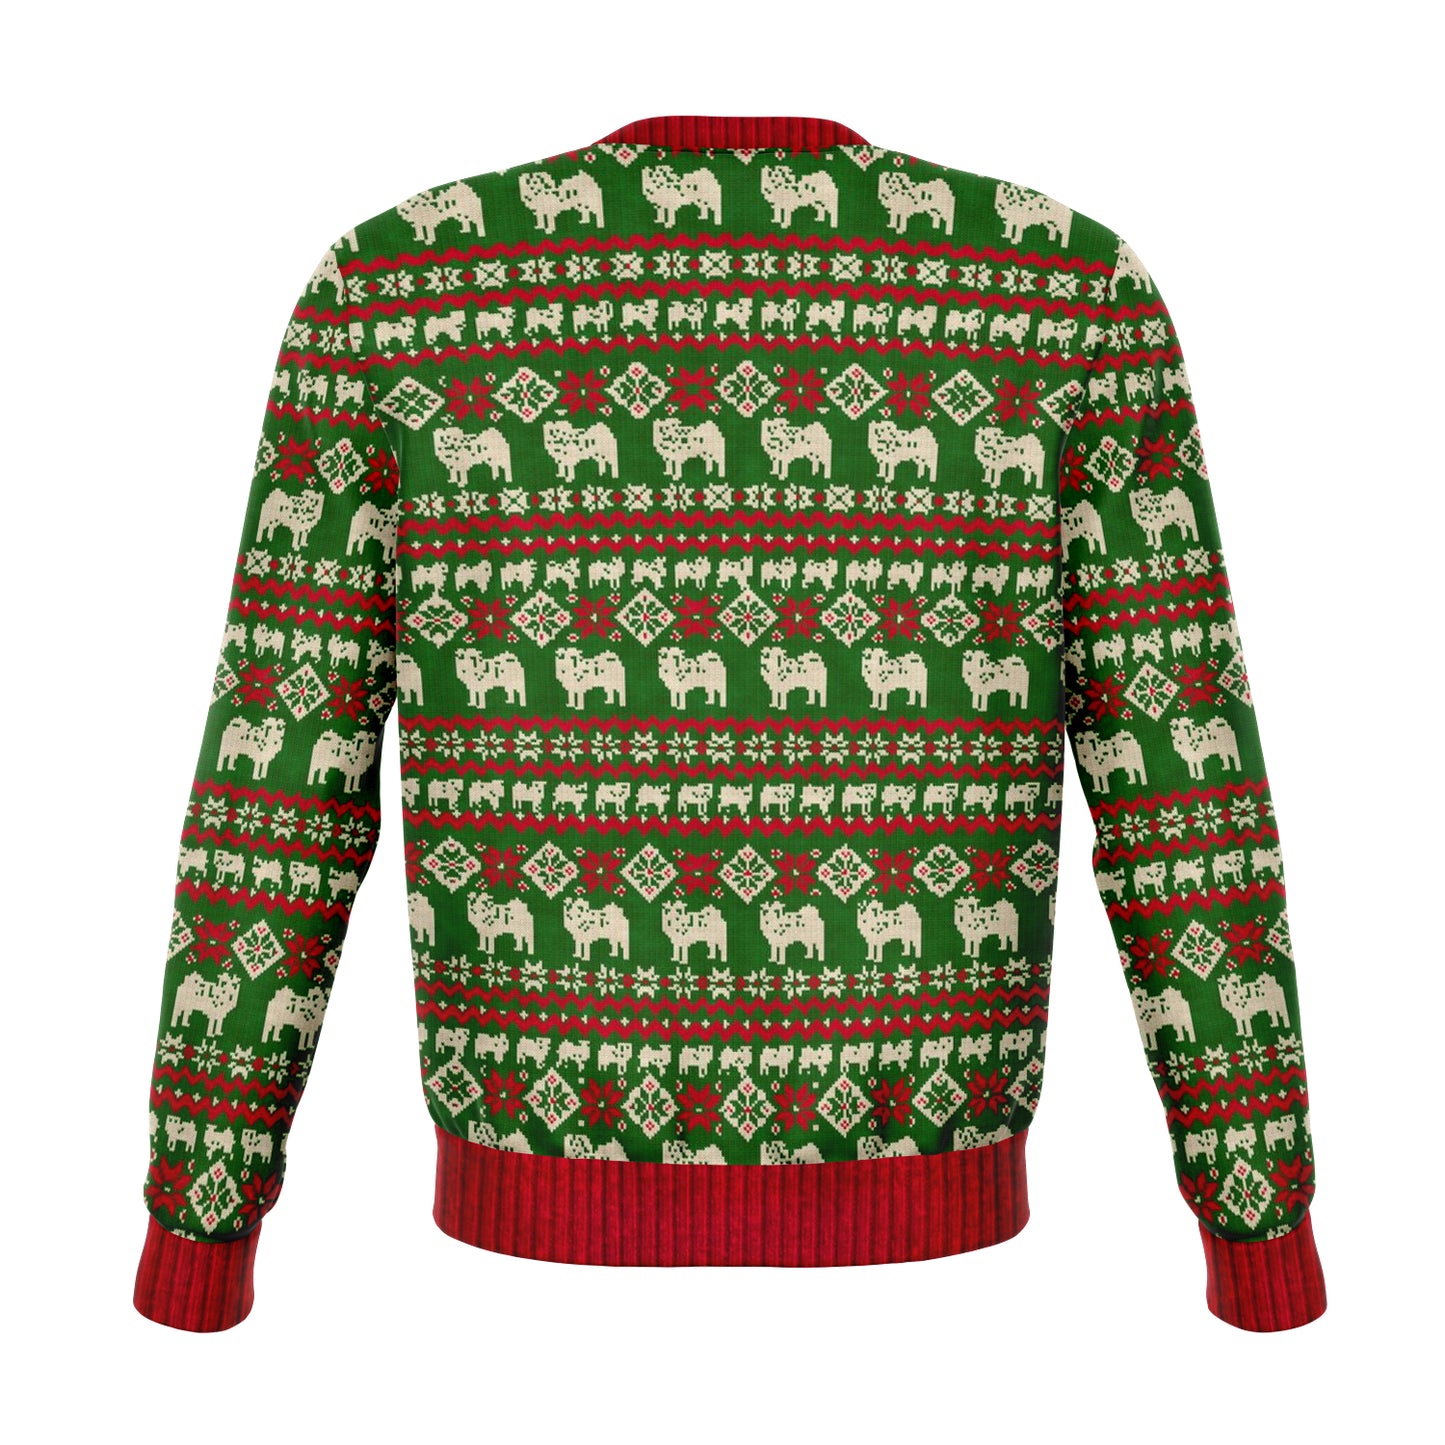 Ugly Christmas Sweatshirt | Bah HumPug Ugly Christmas Sweatshirt-TD Gift Solutions.com